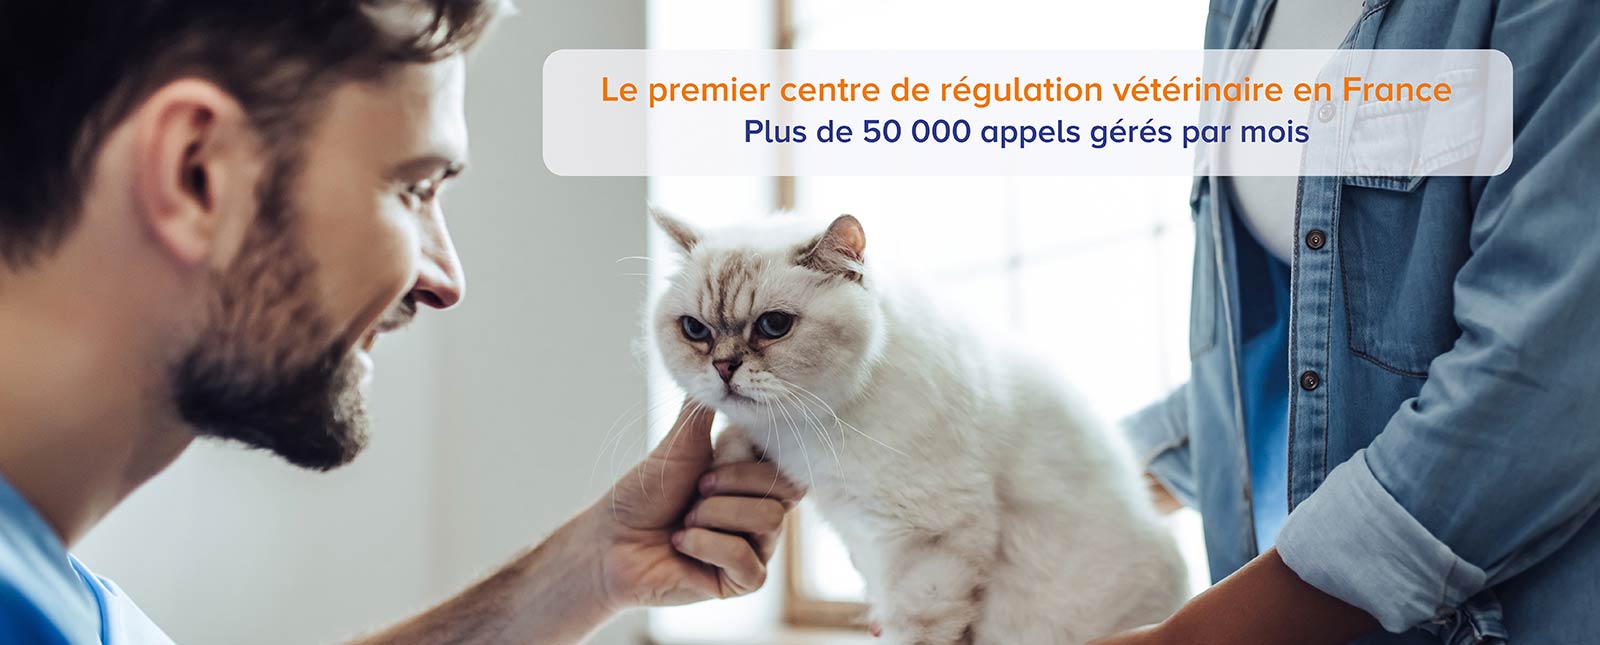 Les vétérinaires de VetoAdom régulent plus de 50 000 demandes de conseils par mois